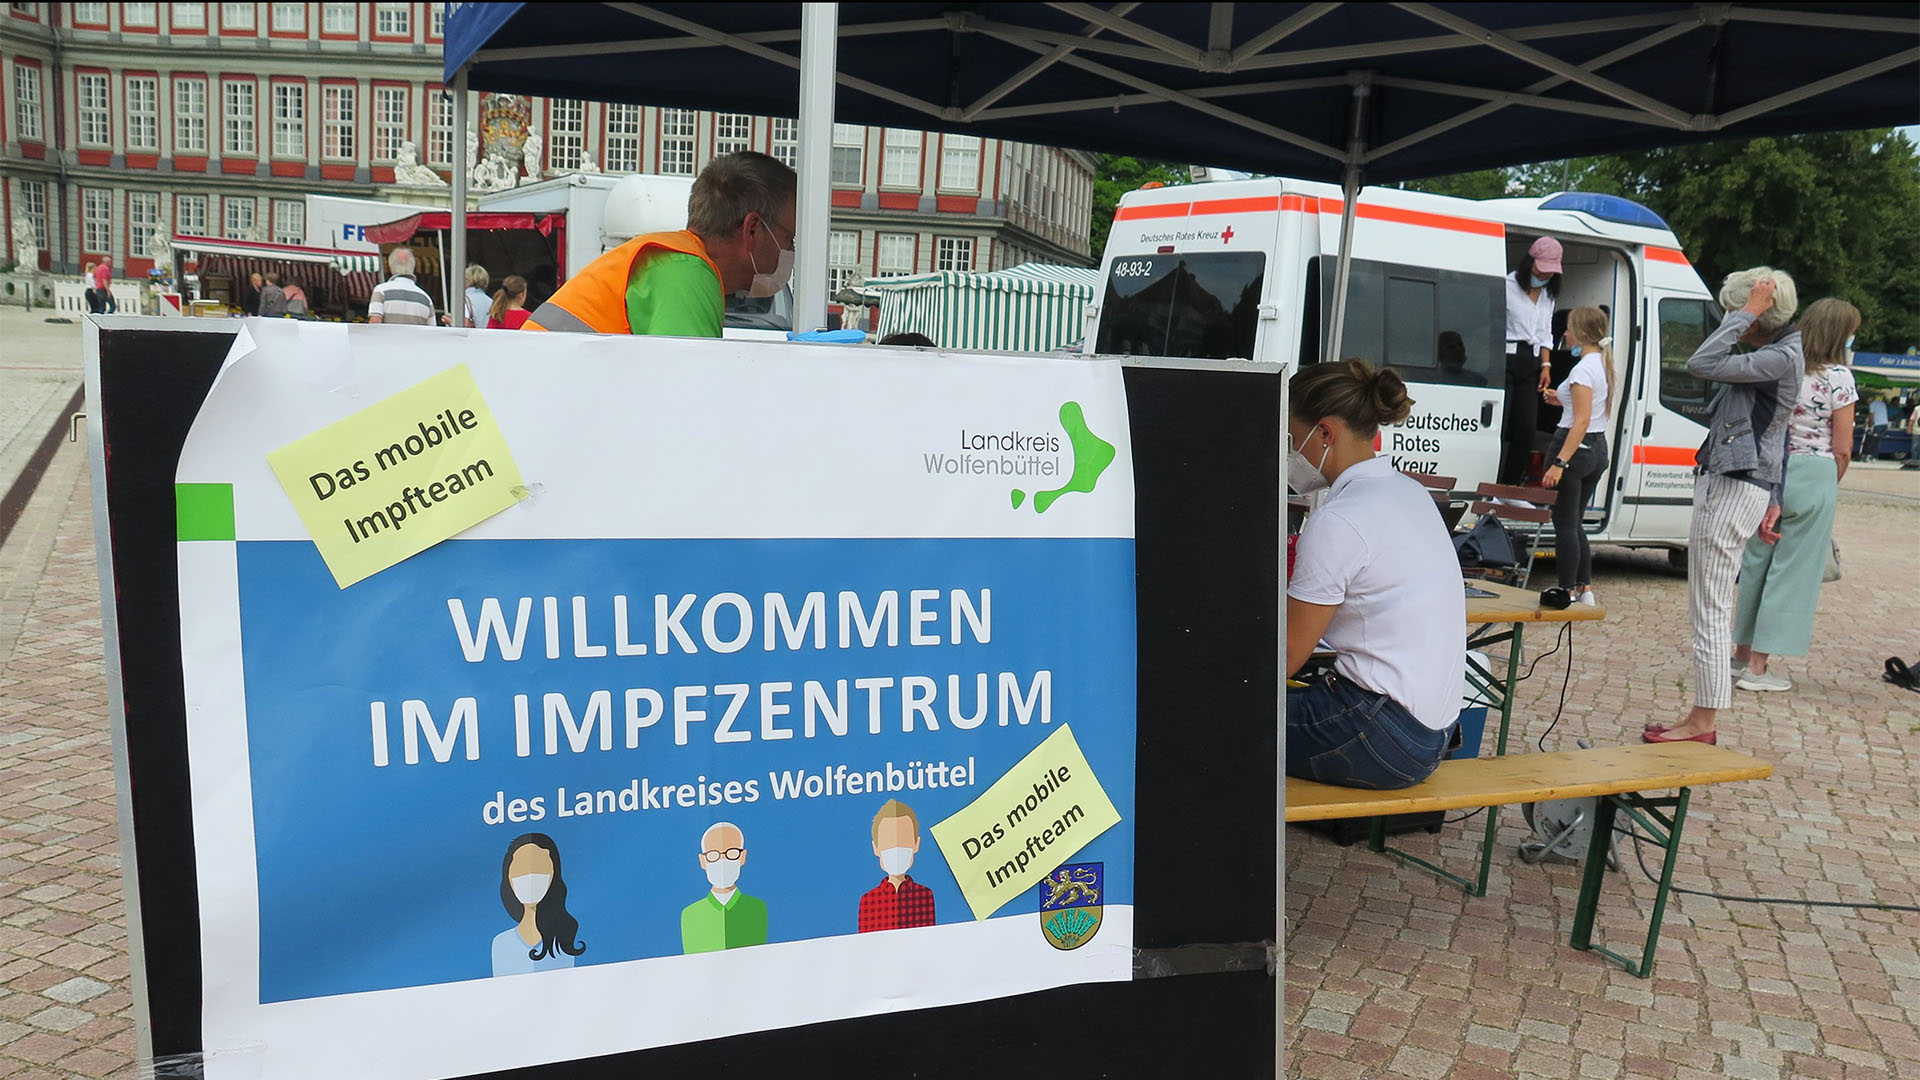 Der Impfbus steht auf dem Schlossplatz, im Hintergrund das Schloss. Im Vordergrund sitzen DRK-Mitarbeiter hinter einem Plakat "Willkommen im Impfzentrum des Landkreises Wolfenbüttel - das mobile Impfteam".